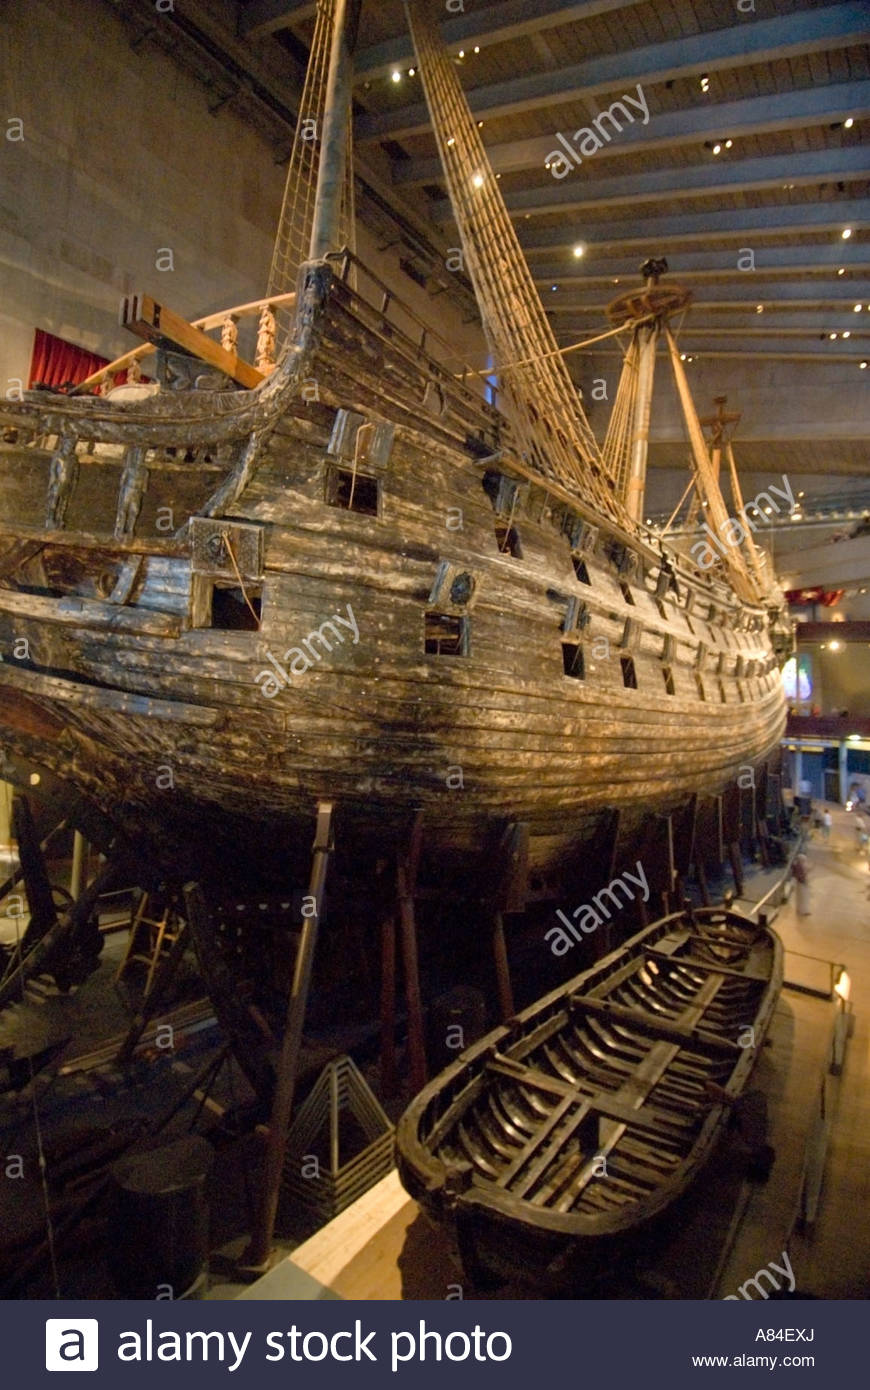 Das Wrack der das Holz-Kriegsschiff Vasa im Vasa Schiff Museum, Vasamuseet,  Stockholm, Schweden Stockfotografie - Alamy